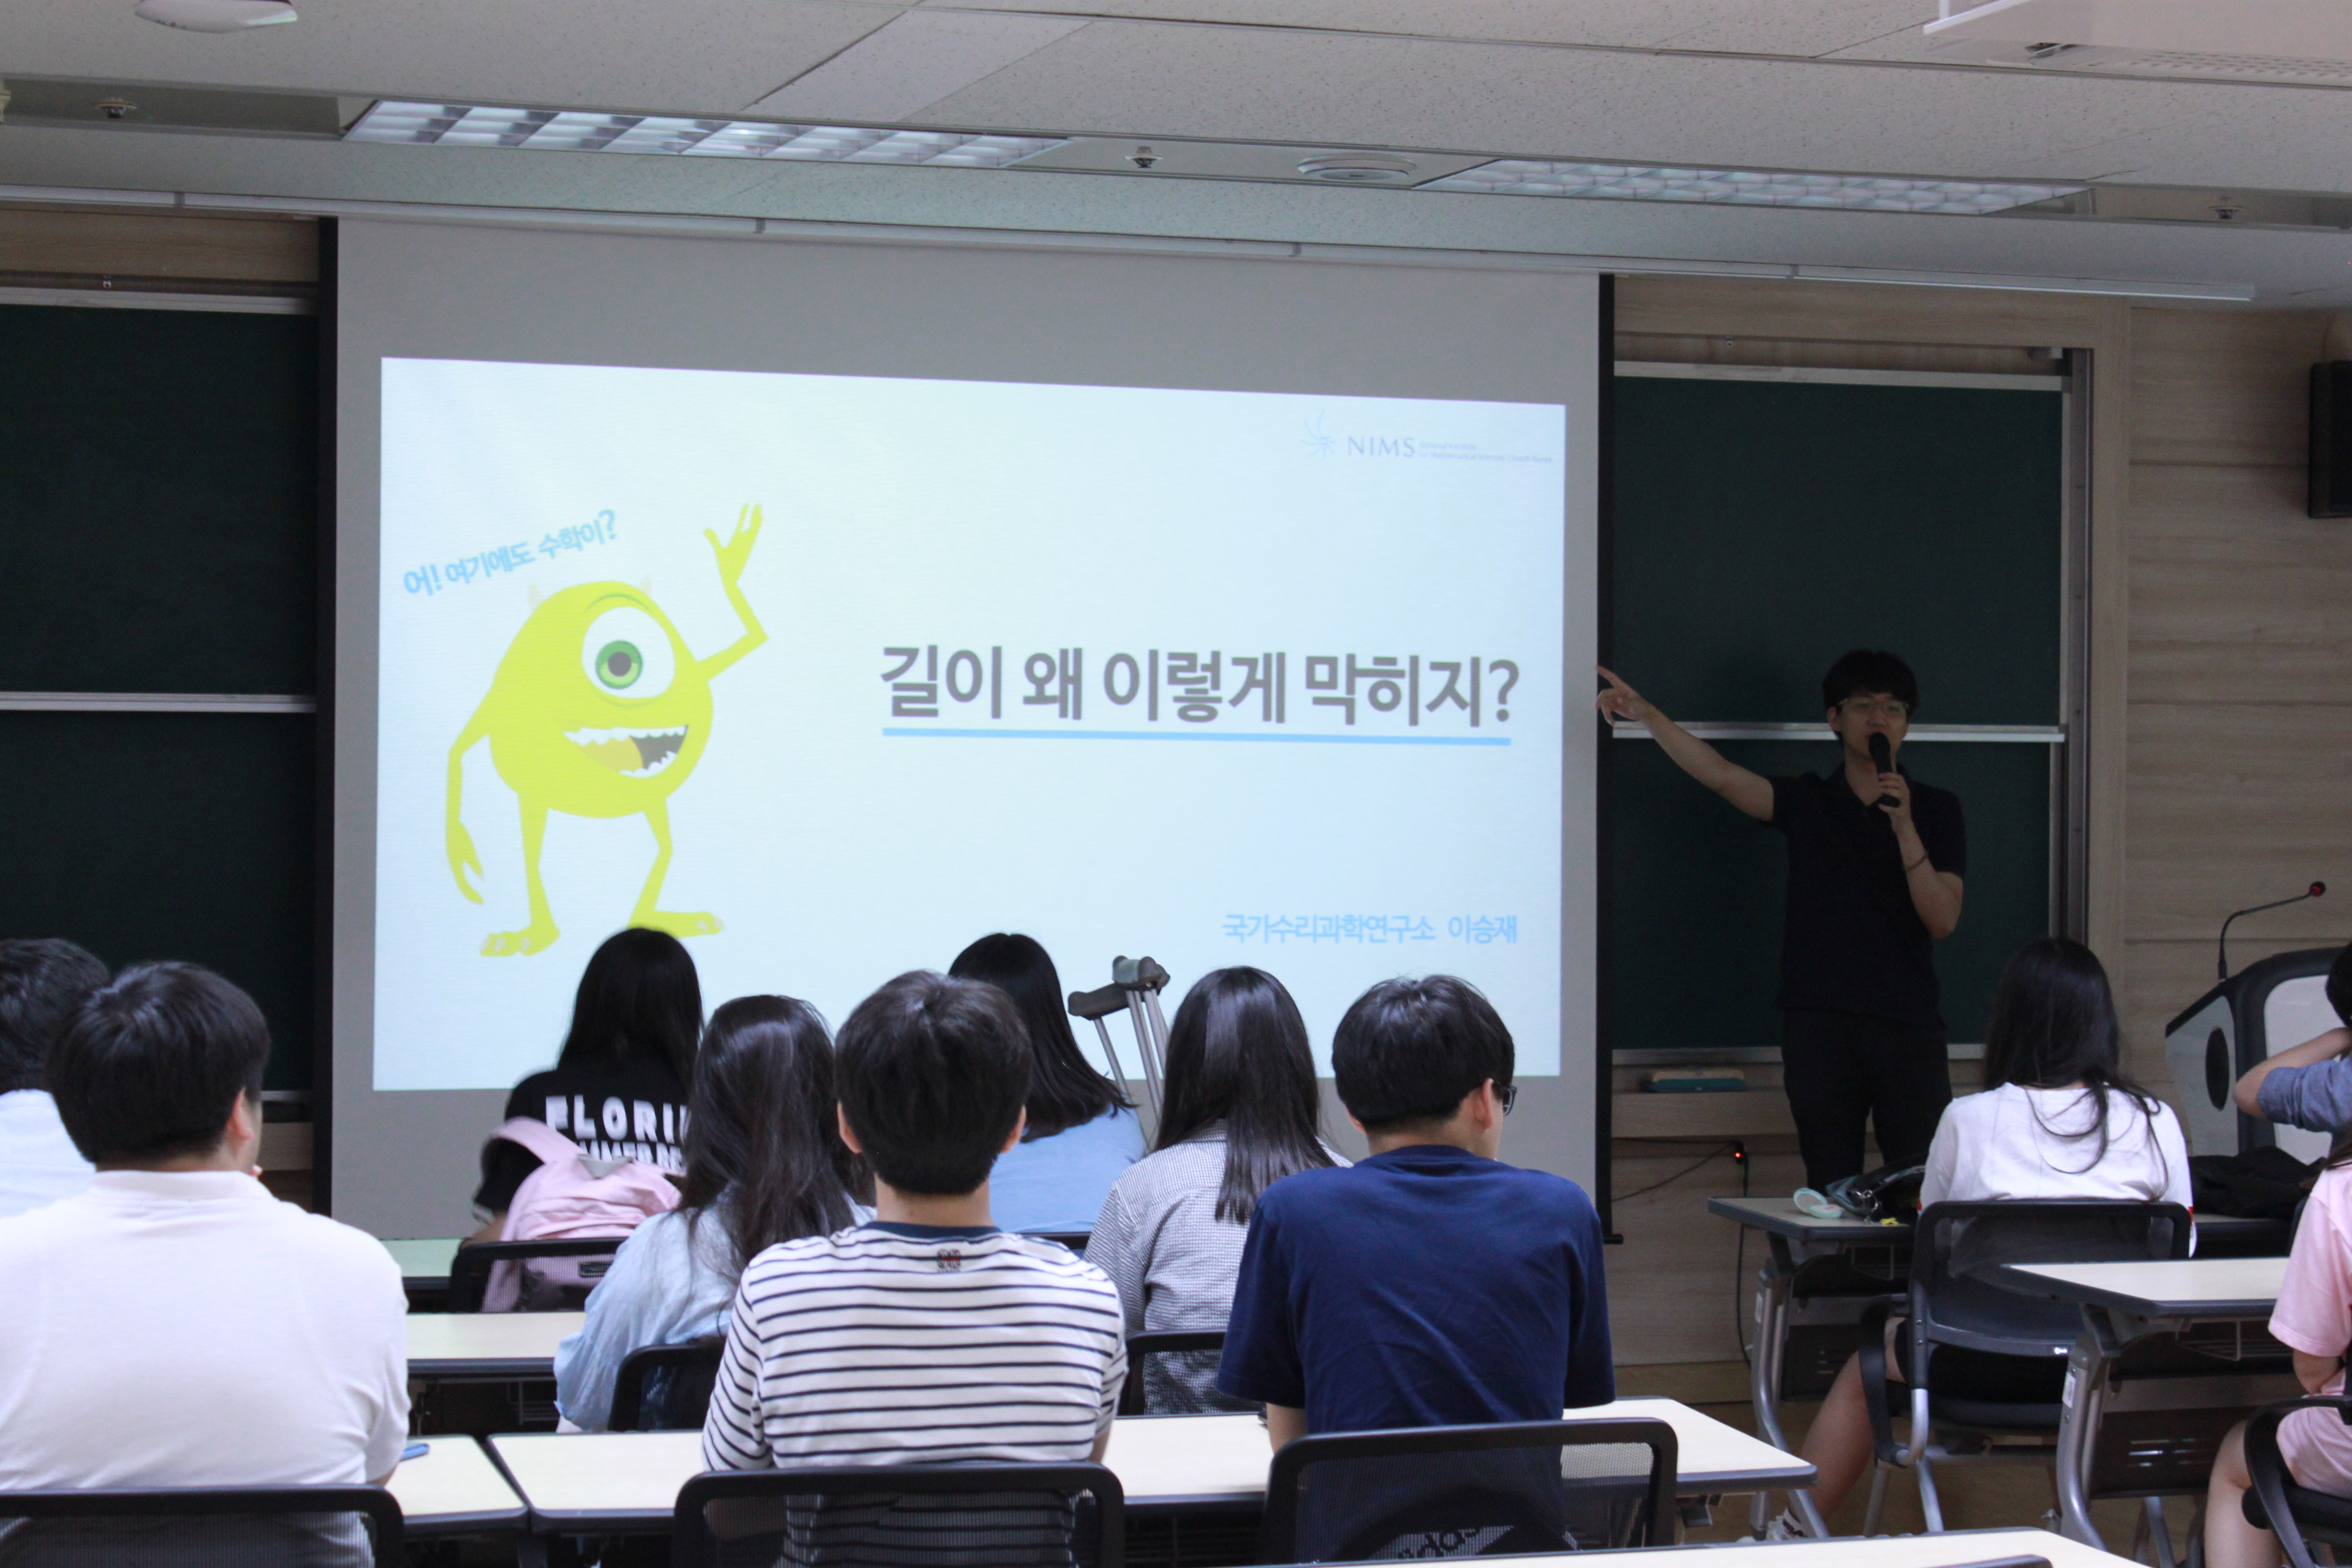 [2017.07.20] 김포고등학교 강연과 이매지너리 체험사진